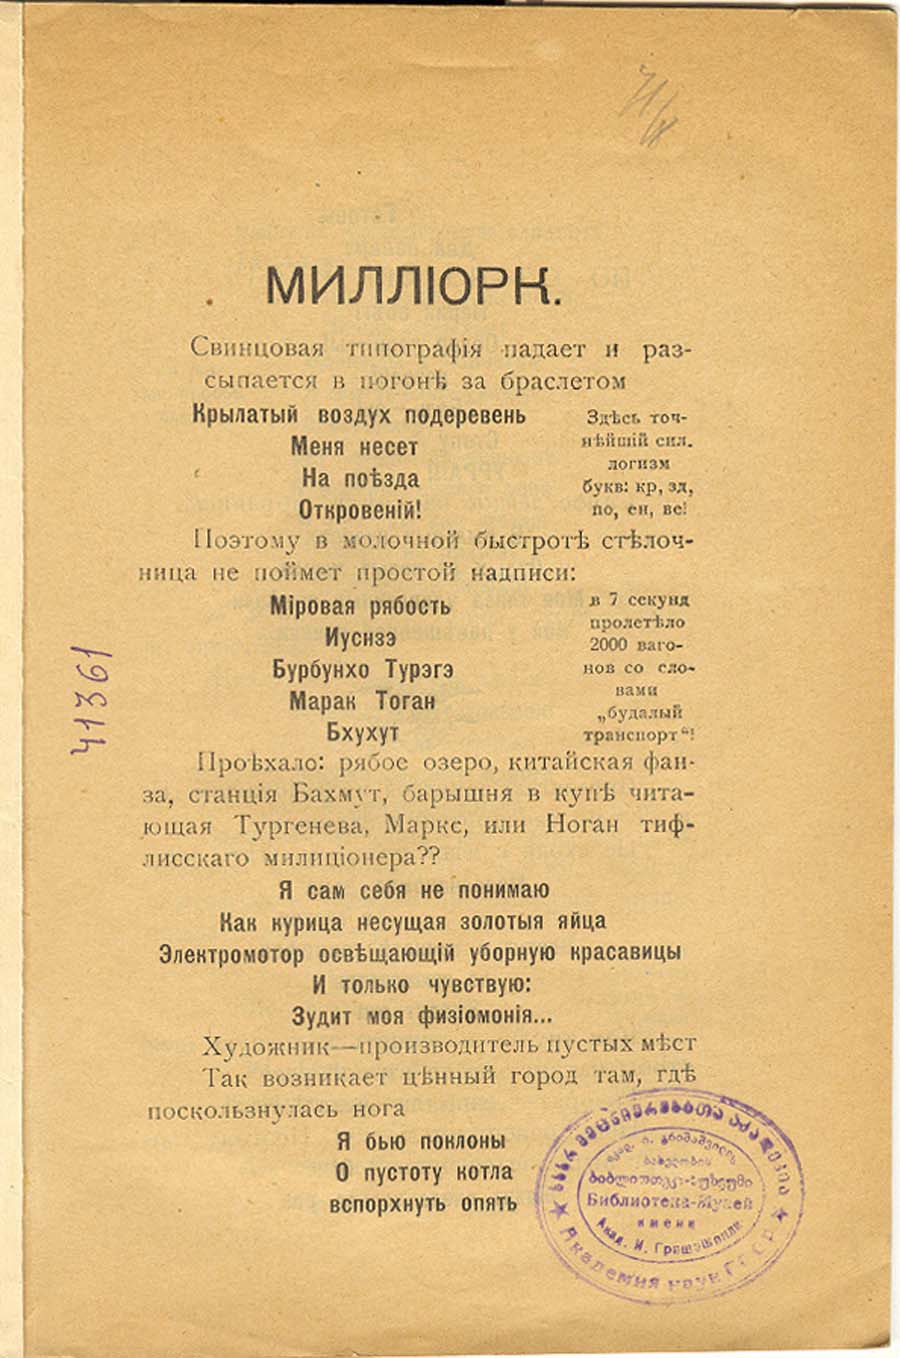 ა. კრუჩონიხი, მილლიორკ, 41˚, ტფილისი, 1919 